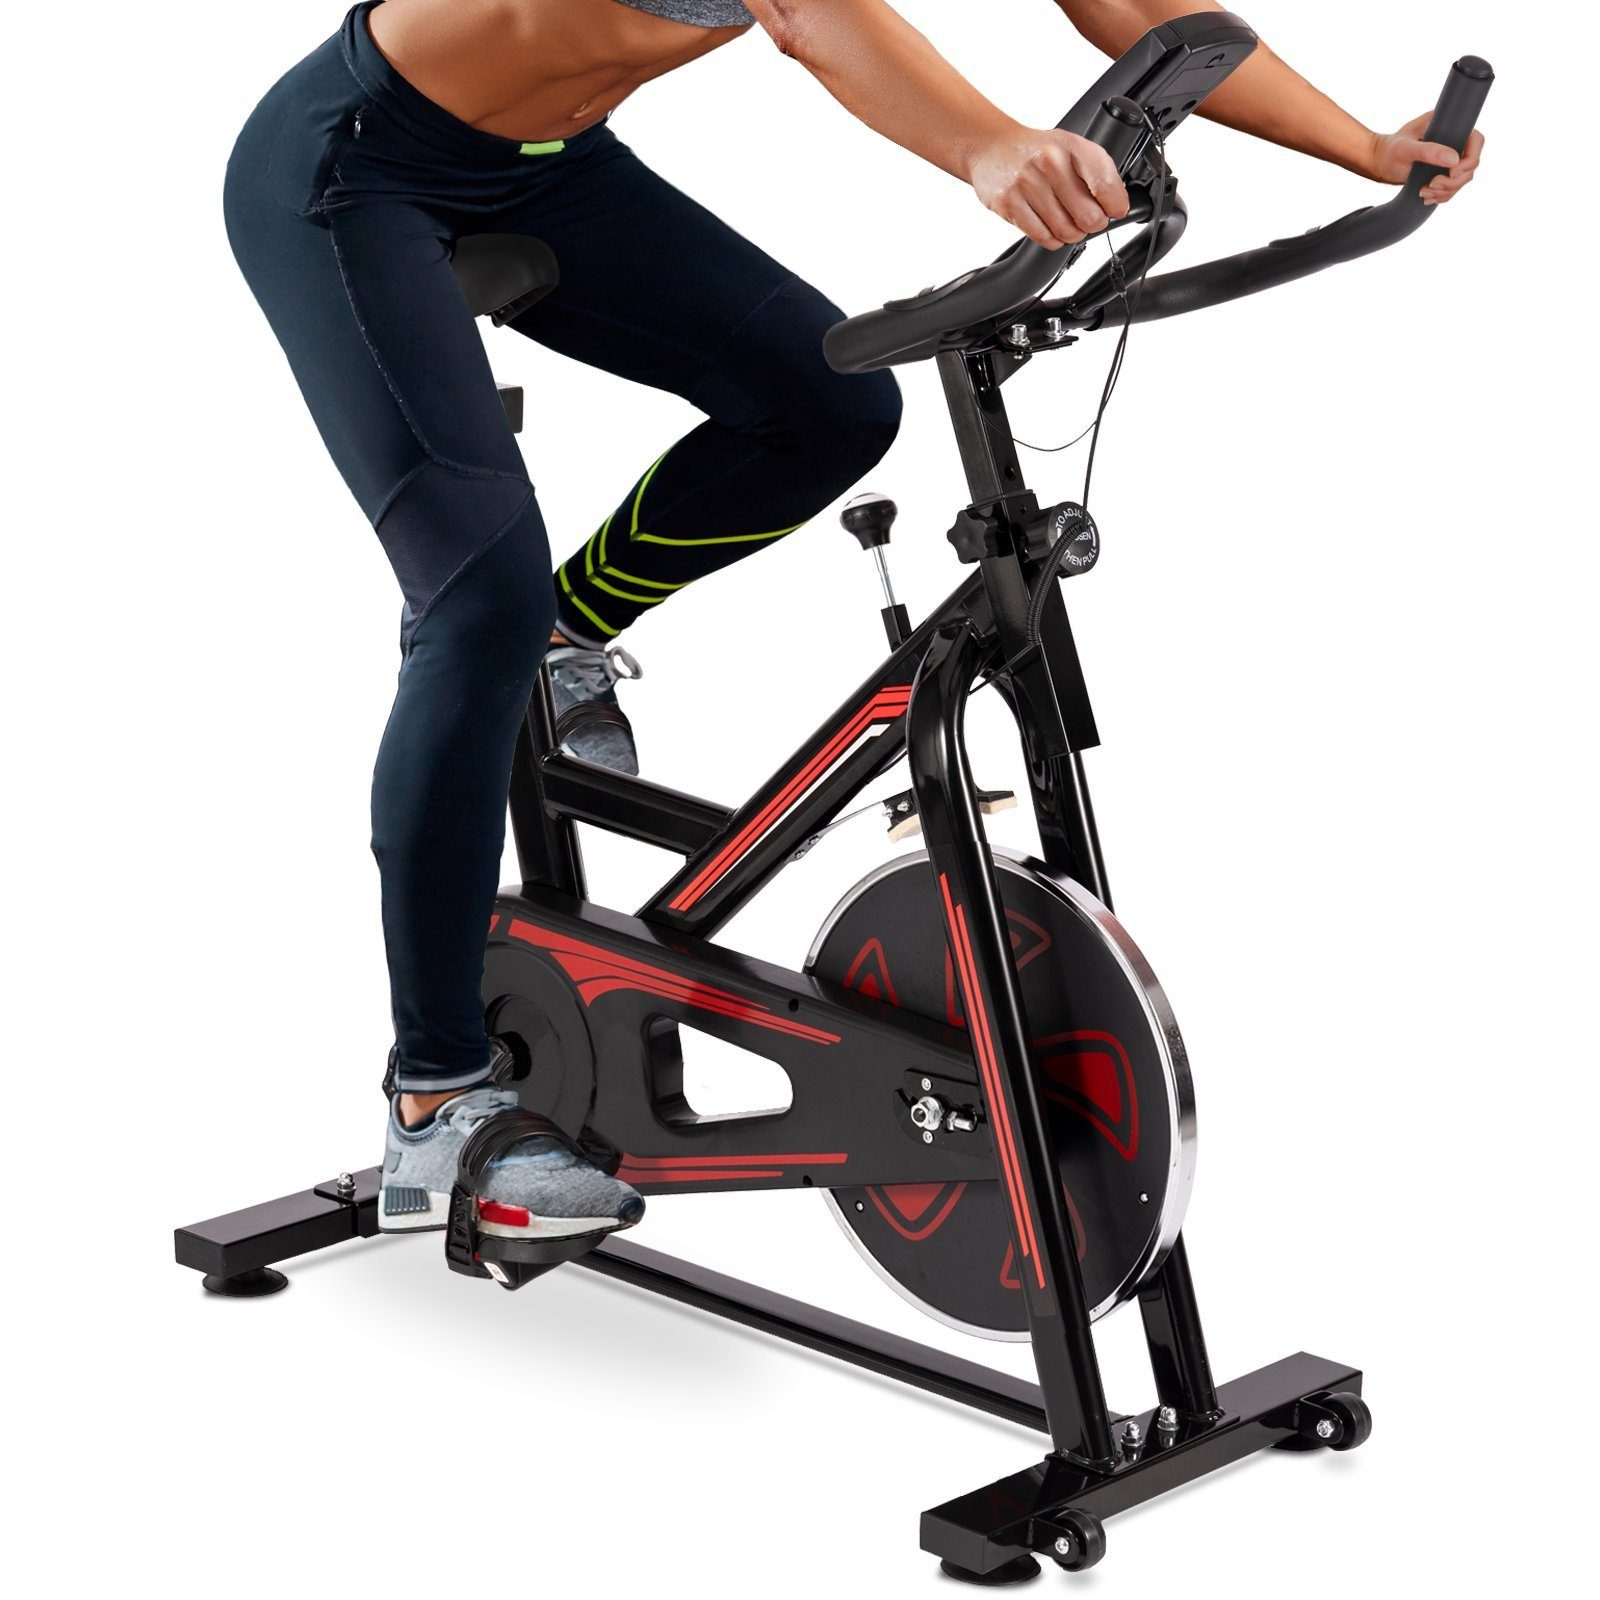 VENDOMNIA Heimtrainer Fitnessbike mit LCD Display (Pulsmesser, Sitz und Griff verstellbar, max 120 kg), Fahrrad, Fahrradtrainer, Fitnessfahrrad, Indoor Cycling Bike